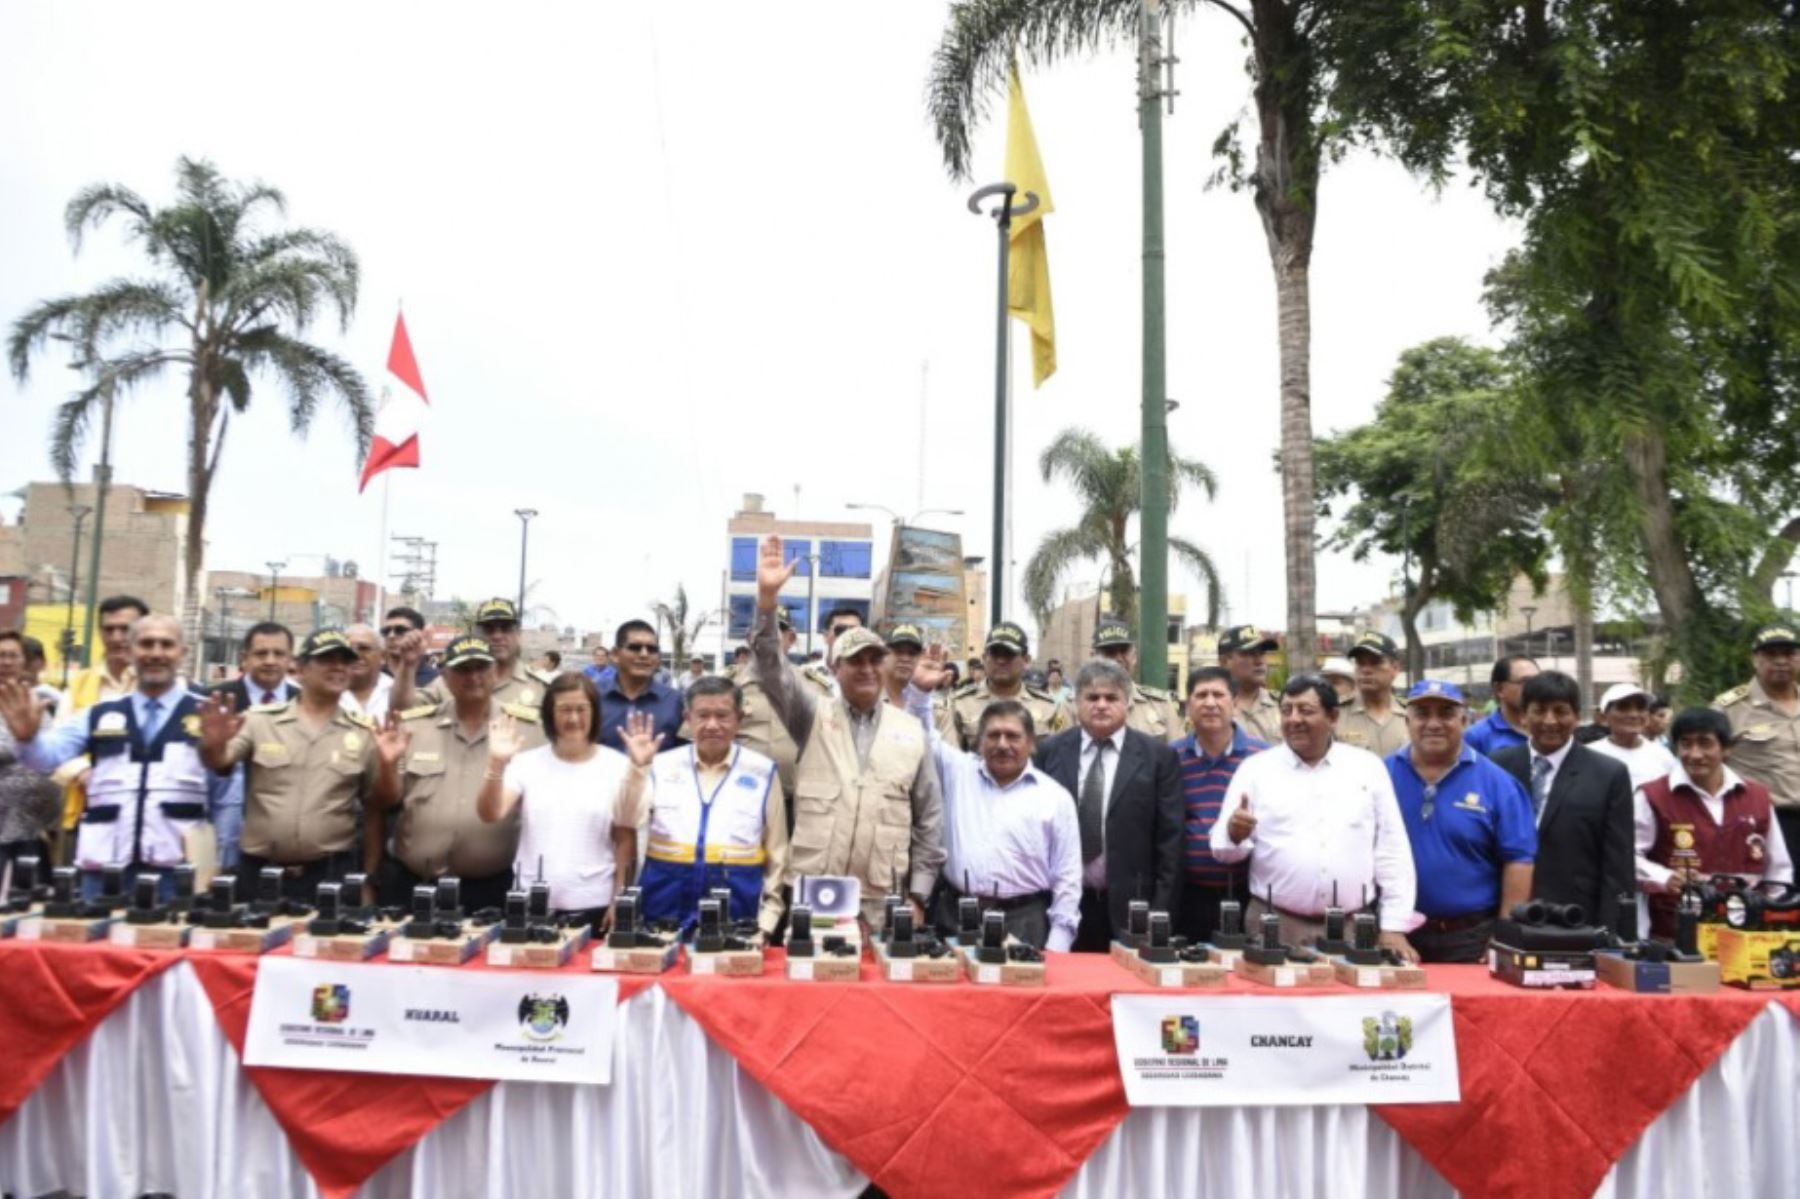 Ministro del Interior, Vicente Romero, tomará juramento a rondas campesinas de Chaparrí para fortalecer la seguridad ciudadana en ese distrito de la provincia de Chiclayo, región Lambayeque.